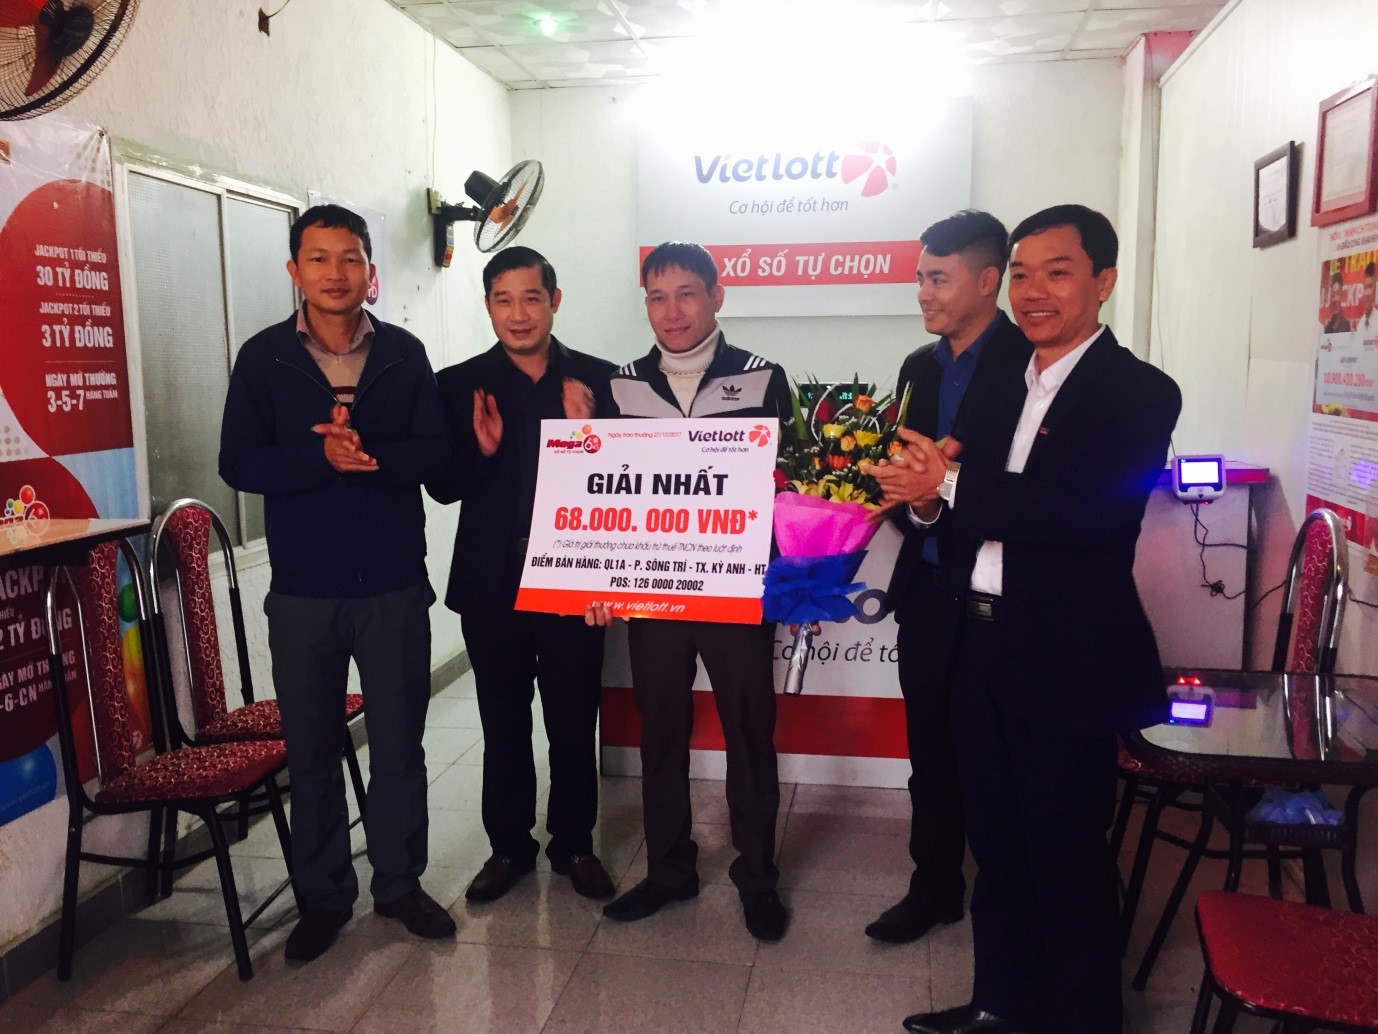 Xổ số Vietlott: Một khách hàng tại Hà Tĩnh nhận thưởng giá trị lớn